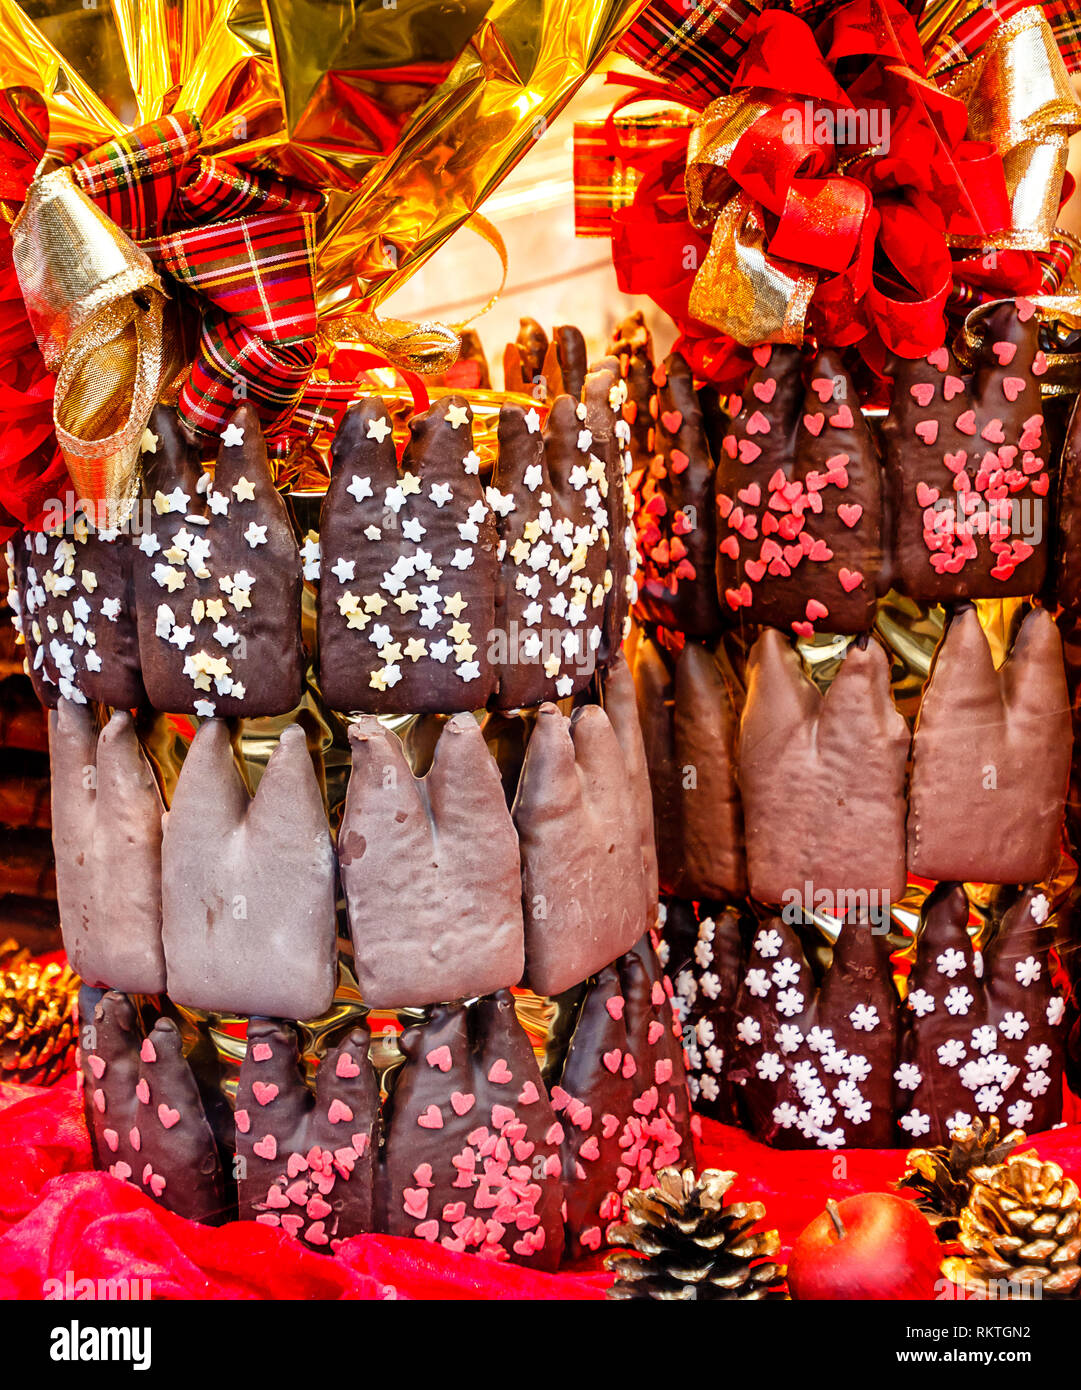 D'épices en forme de la cathédrale de Cologne (allemand "Koelner Doemchen") avec glaçage au chocolat sur le marché de Noël à Cologne, Allemagne Banque D'Images